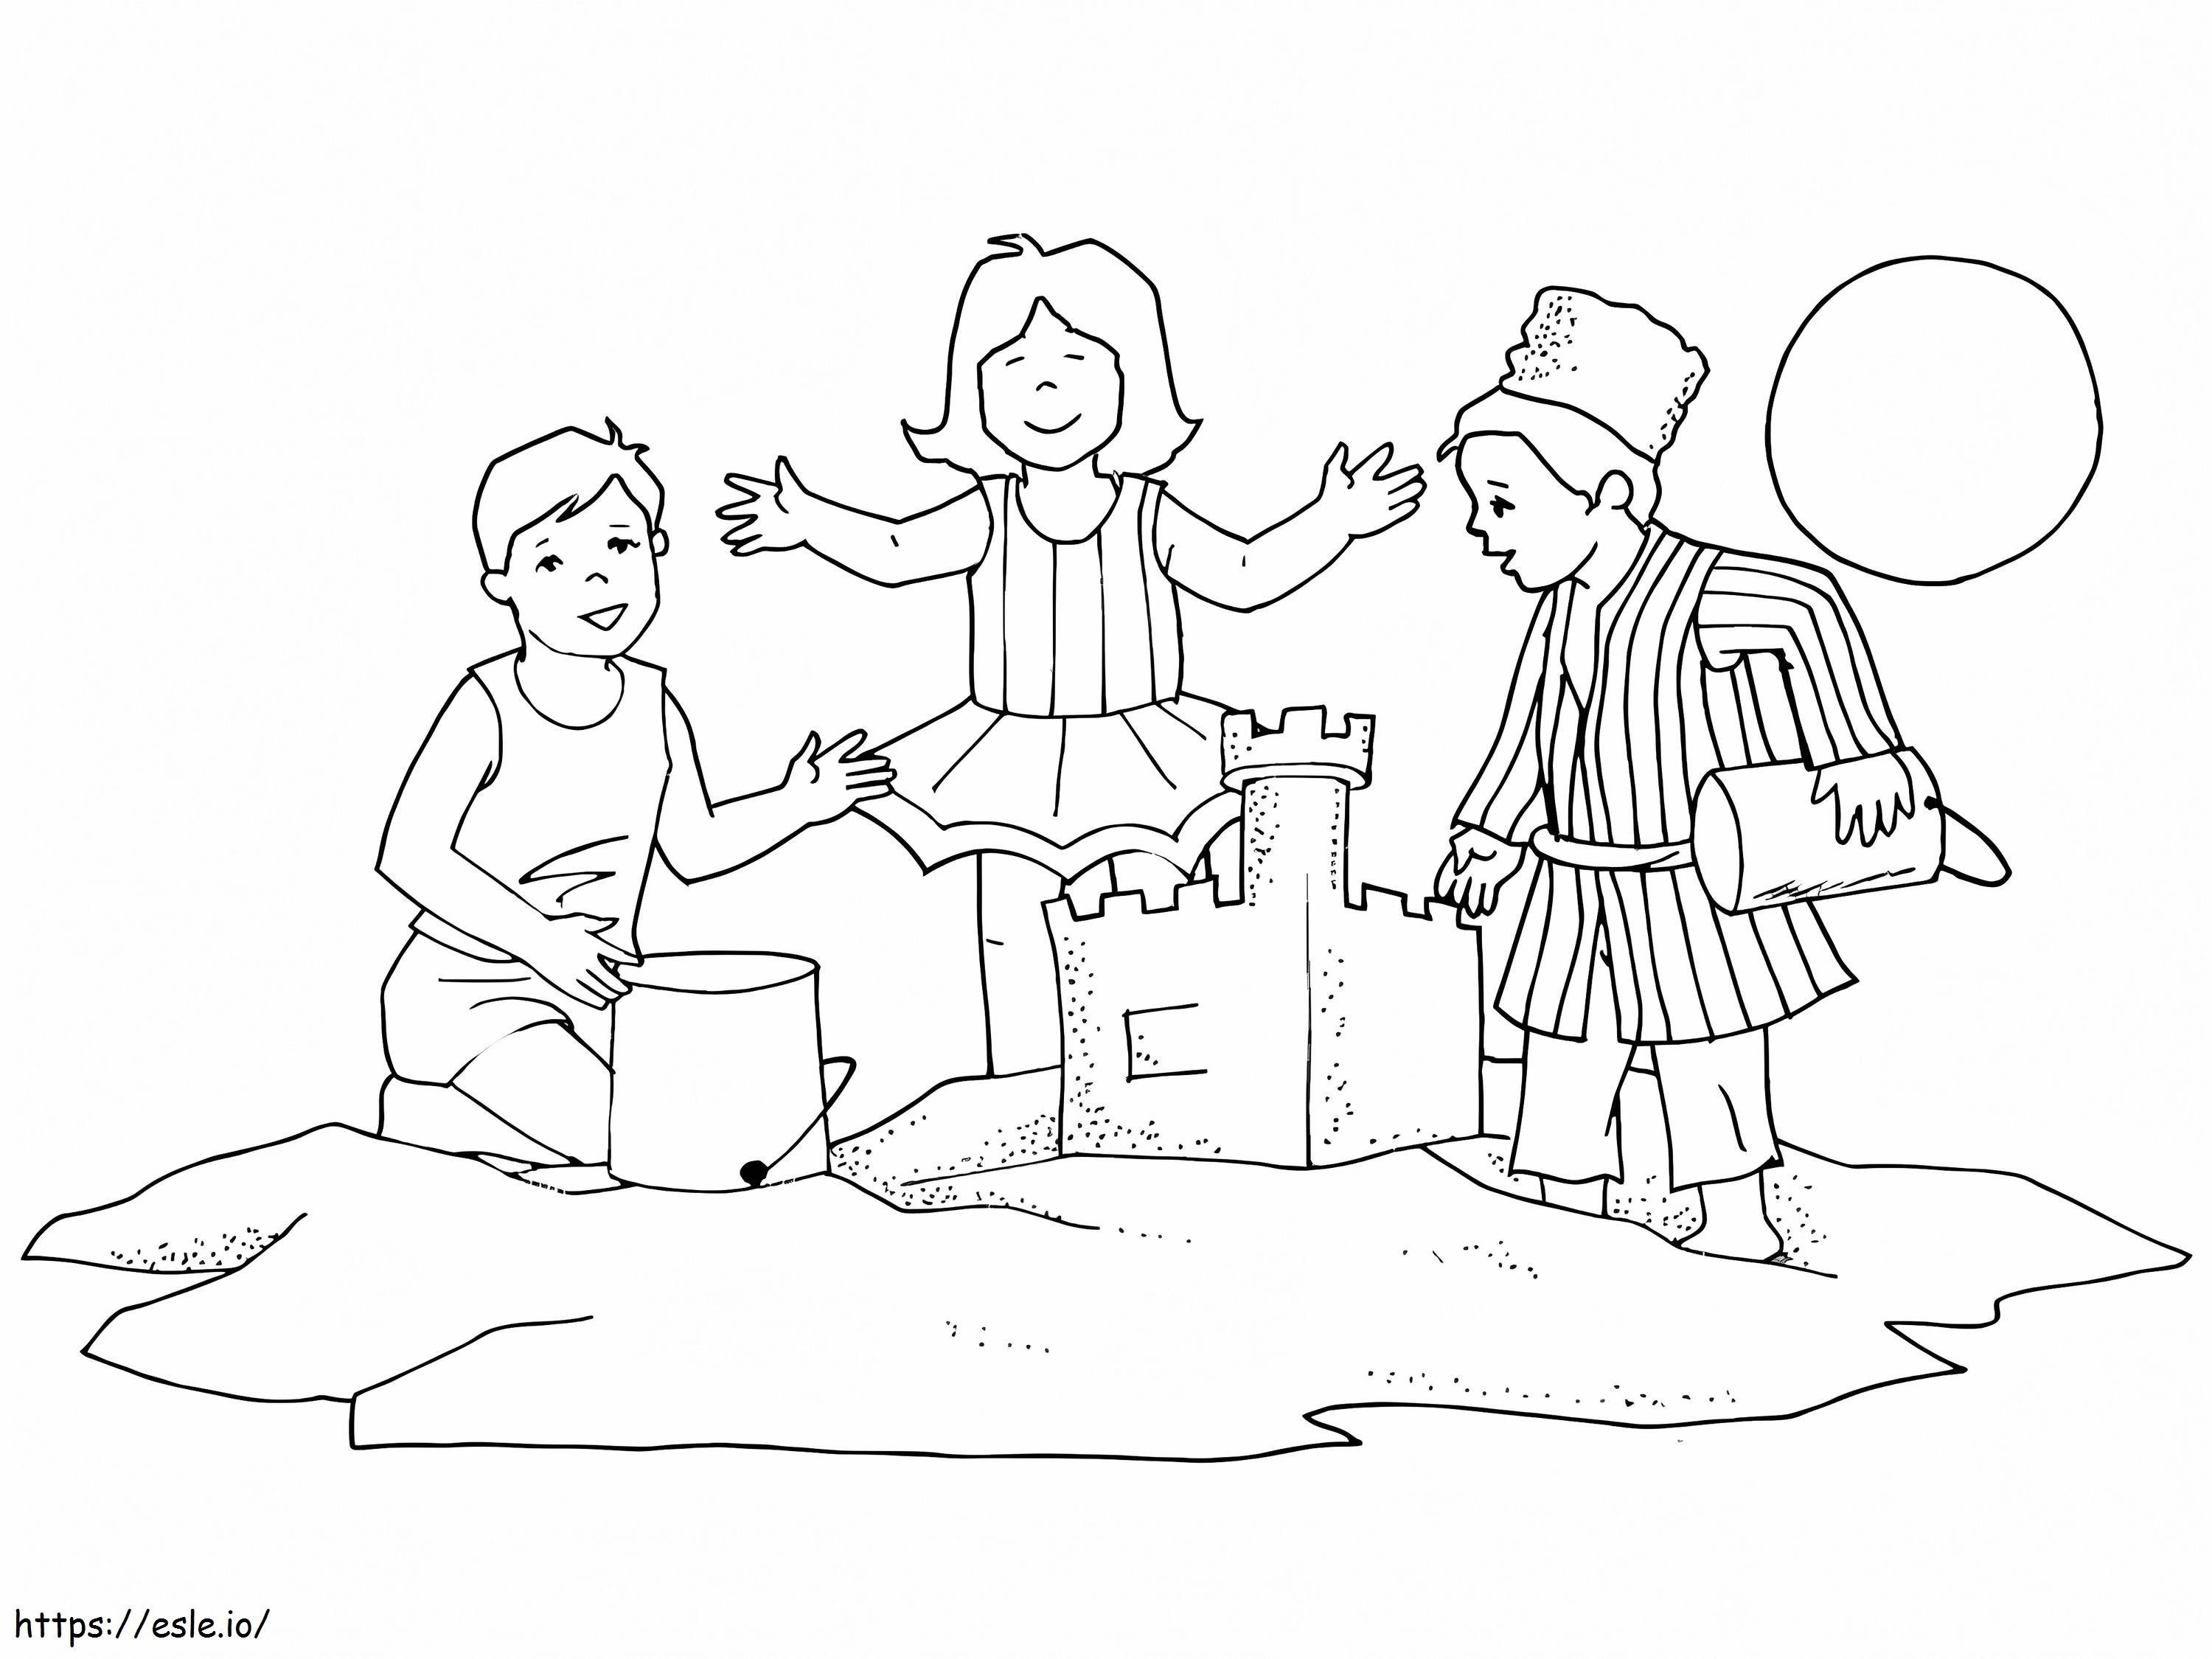 Kids Building A Sand Castle coloring page